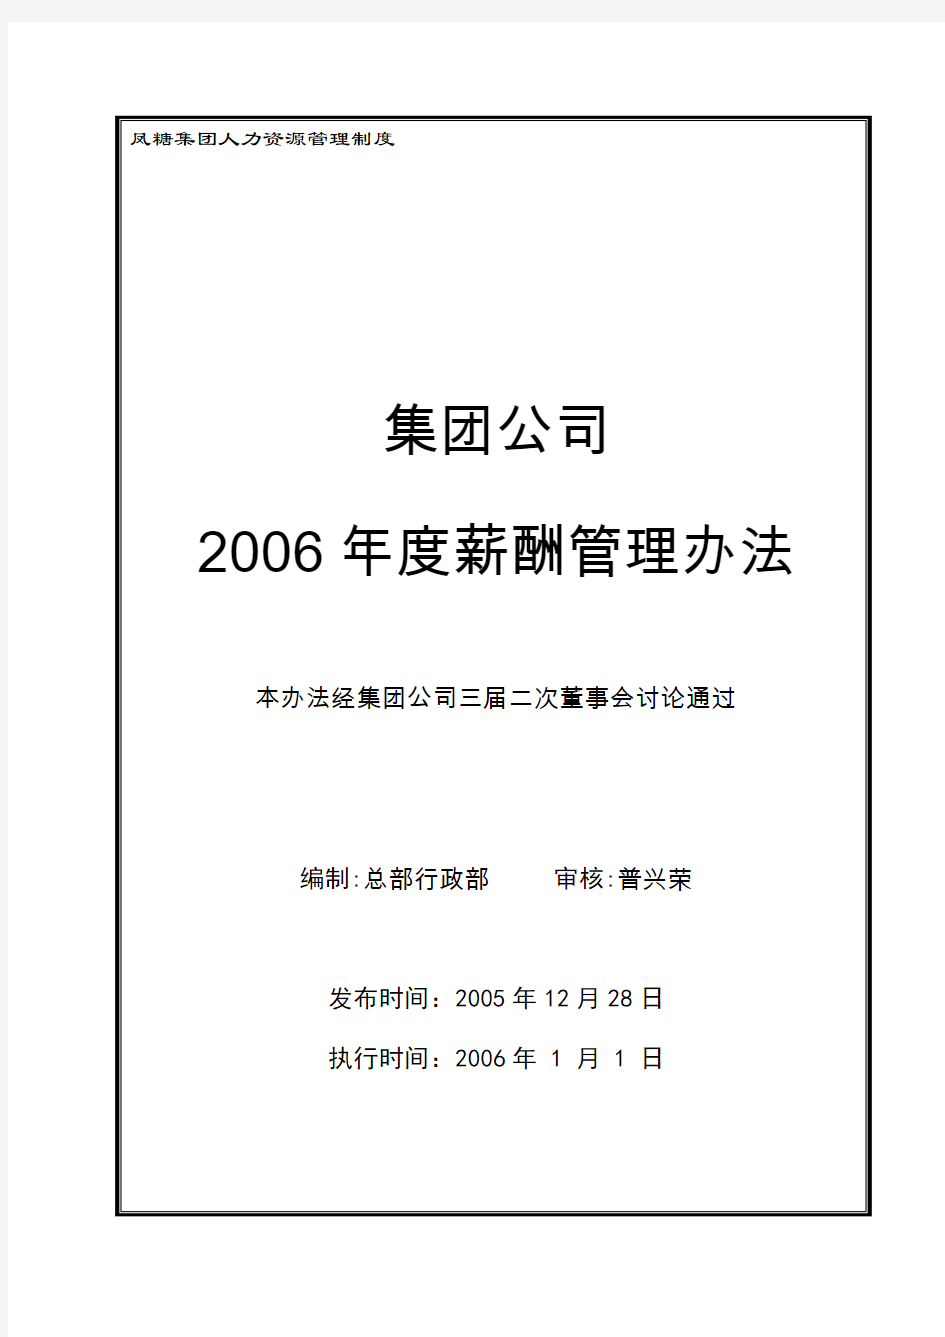 2006年度集团公司薪酬管理办法